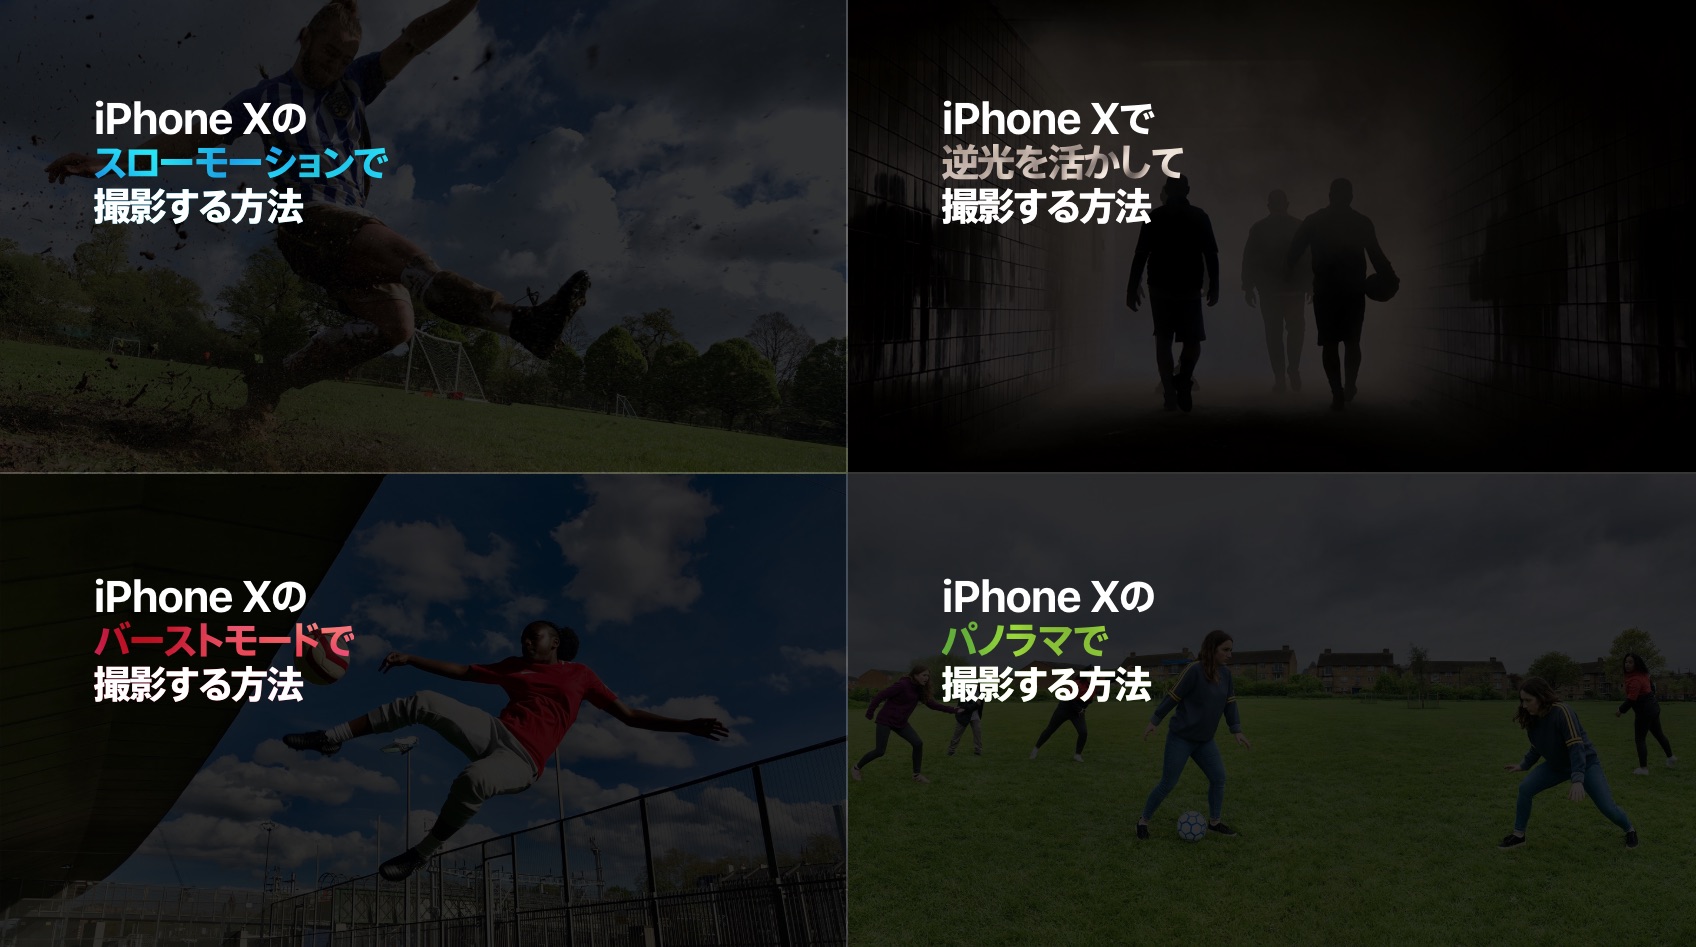 Iphone X サッカーに特化した撮影方法のあれこれ 私設apple委員会